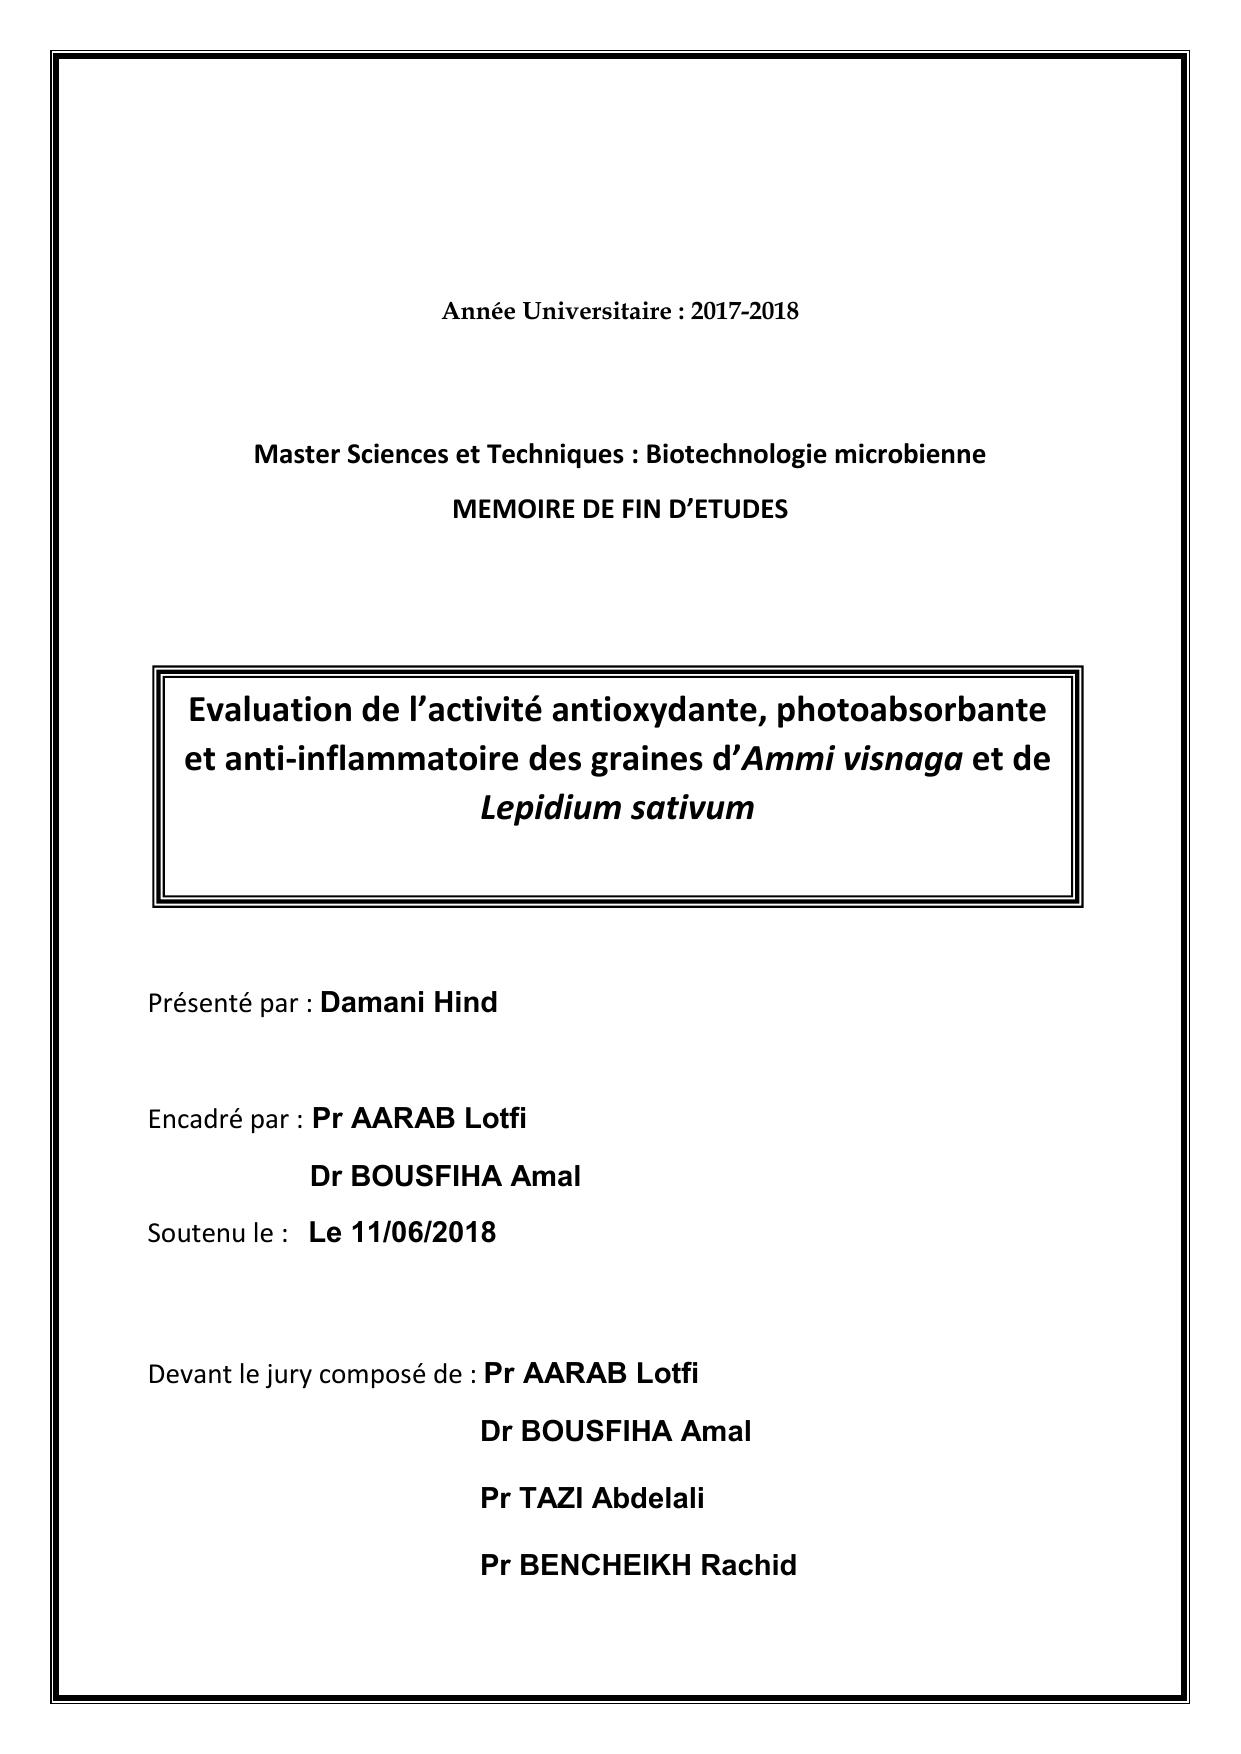 Evaluation de l’activité antioxydante, photoabsorbante et anti-inflammatoire des graines d’Ammi visnaga et de Lepidium sativum